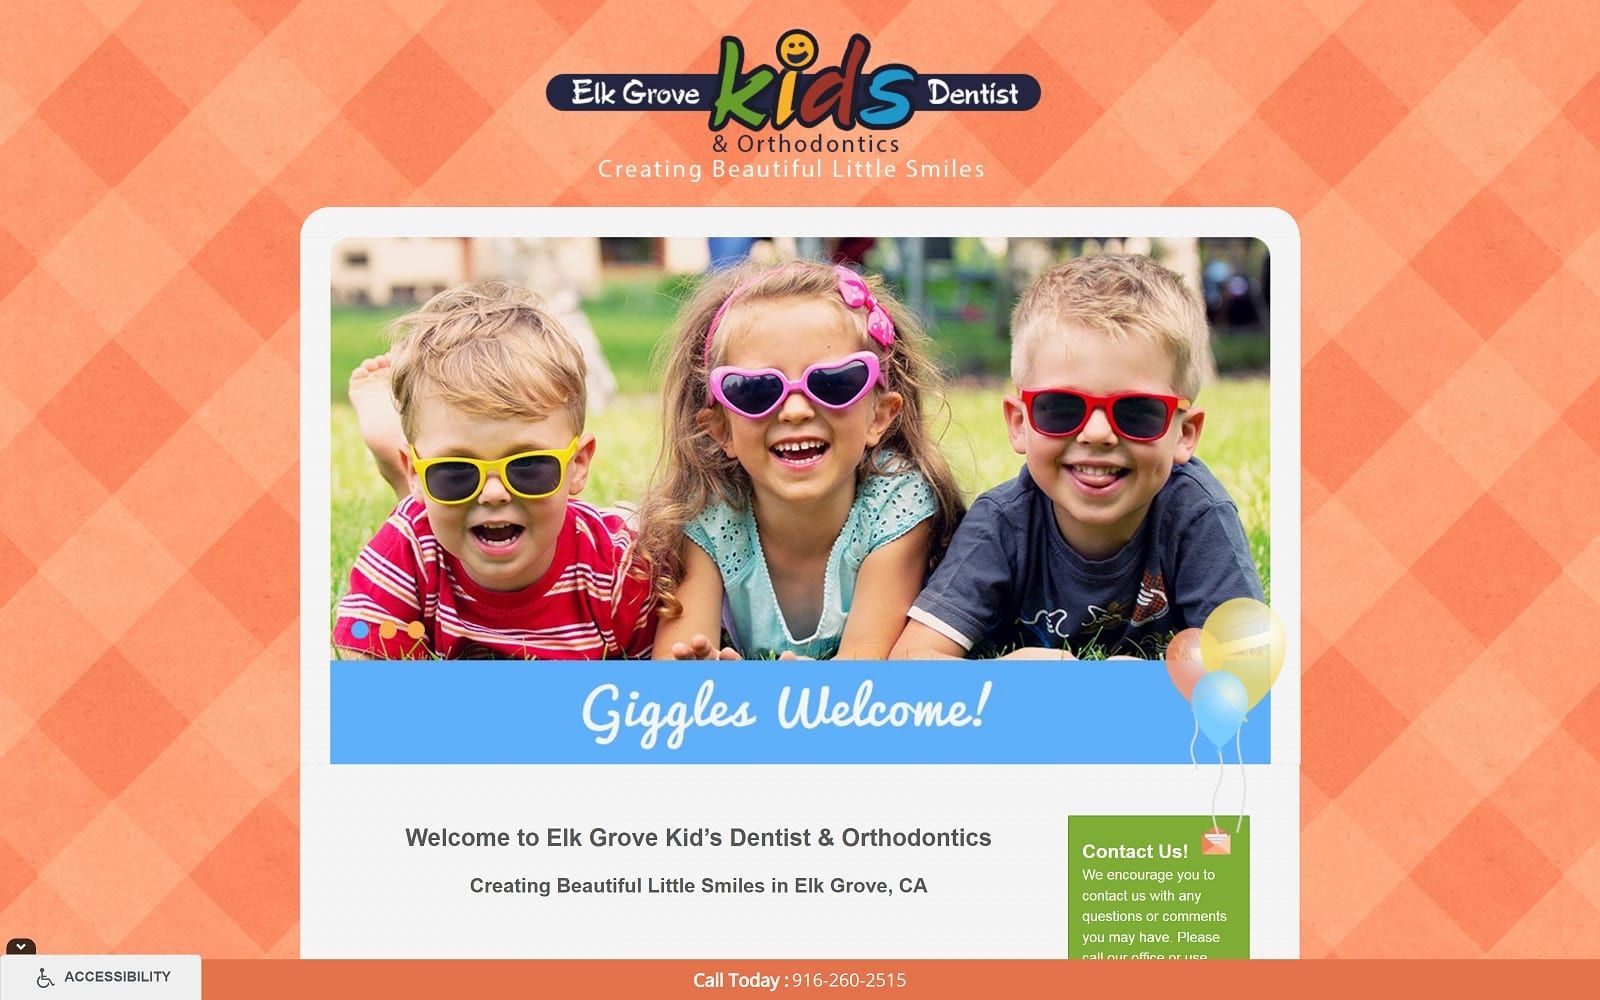 The Screenshot of Elk Grove Kids Dentist & Orthodontics elkgrovekidsdentist.com Website